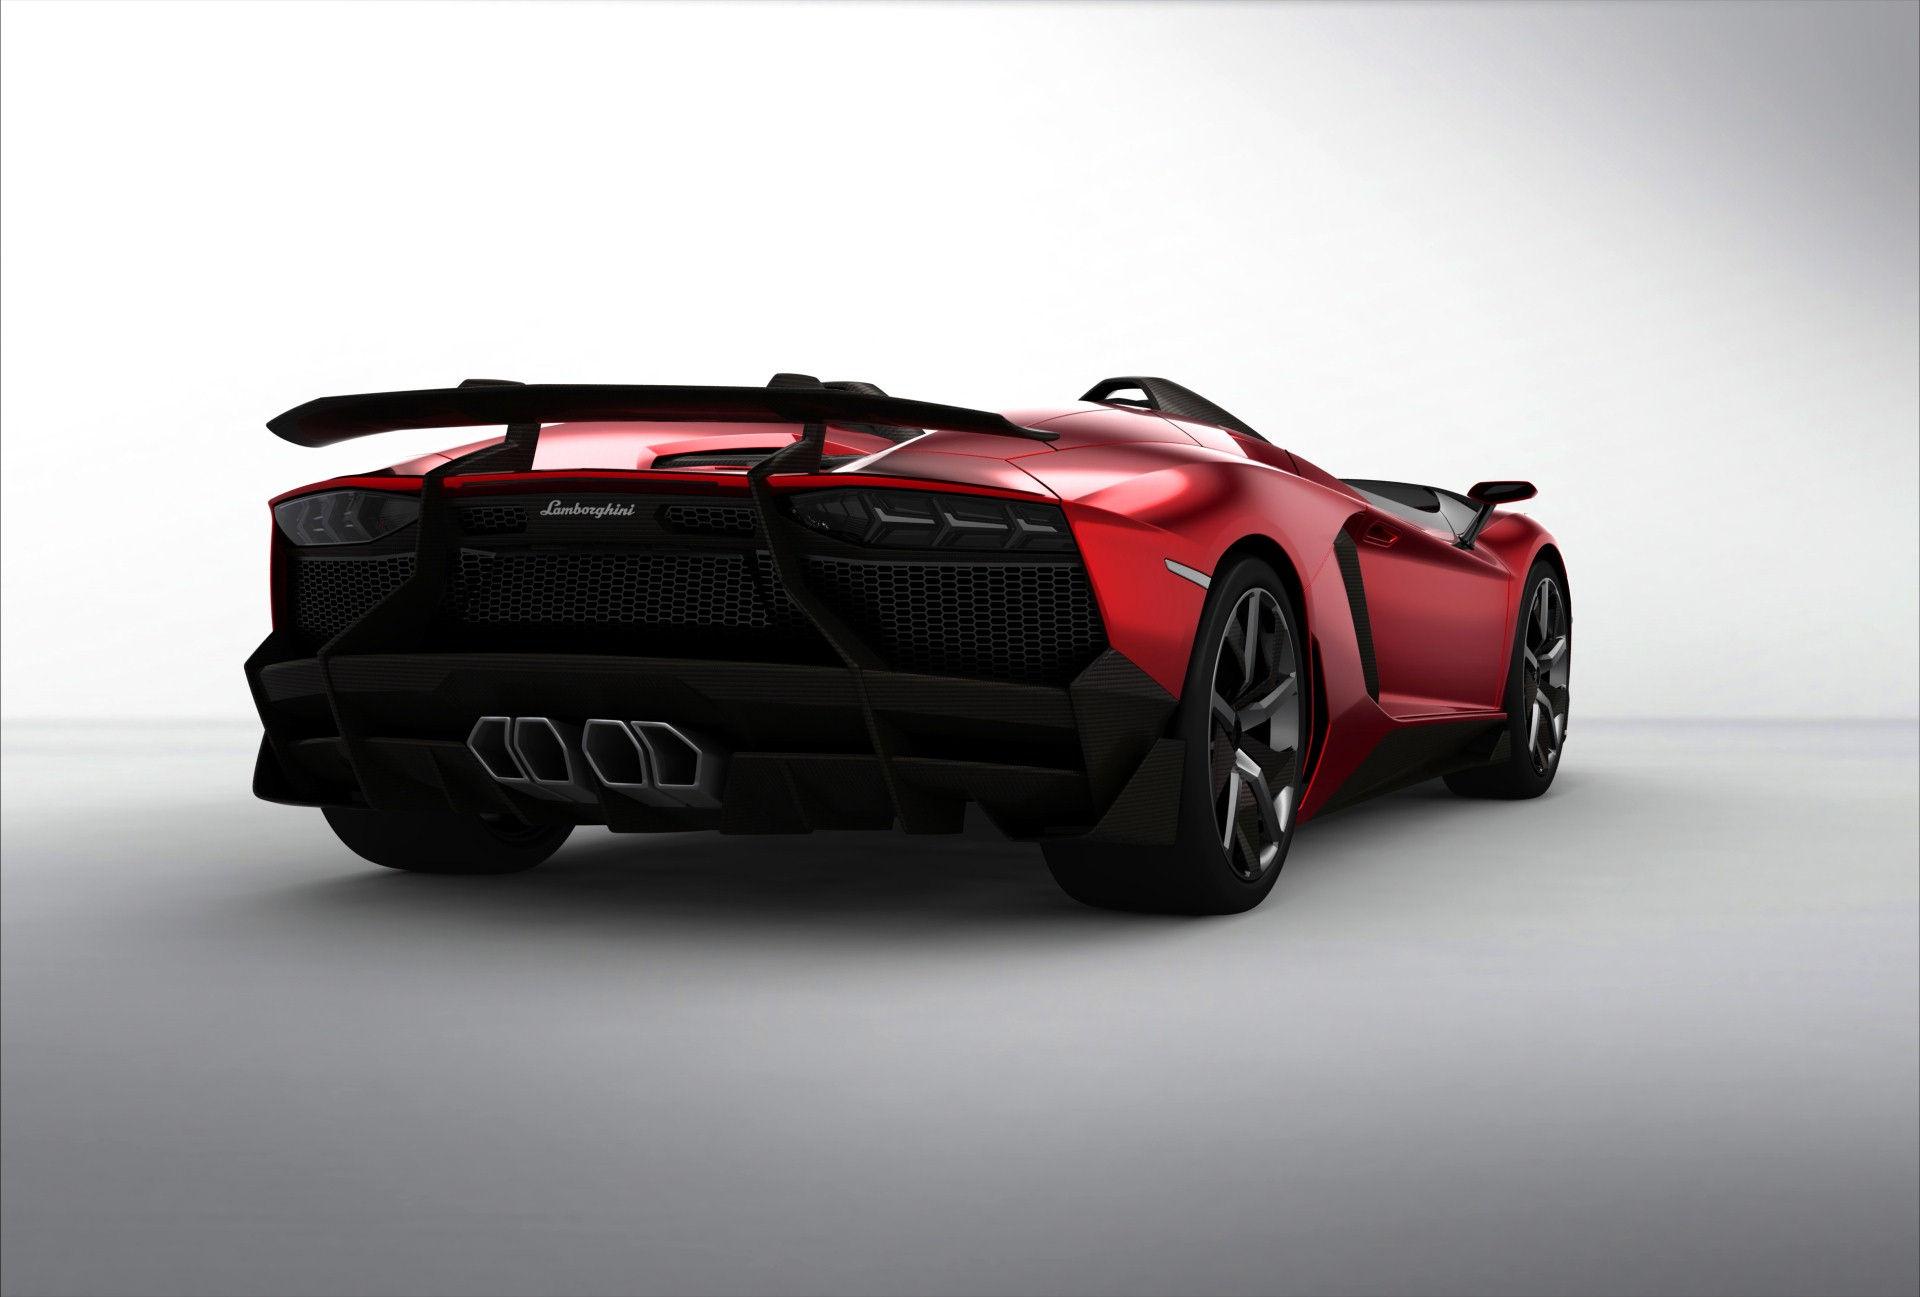 2012 Bj. Lamborghini Aventador J